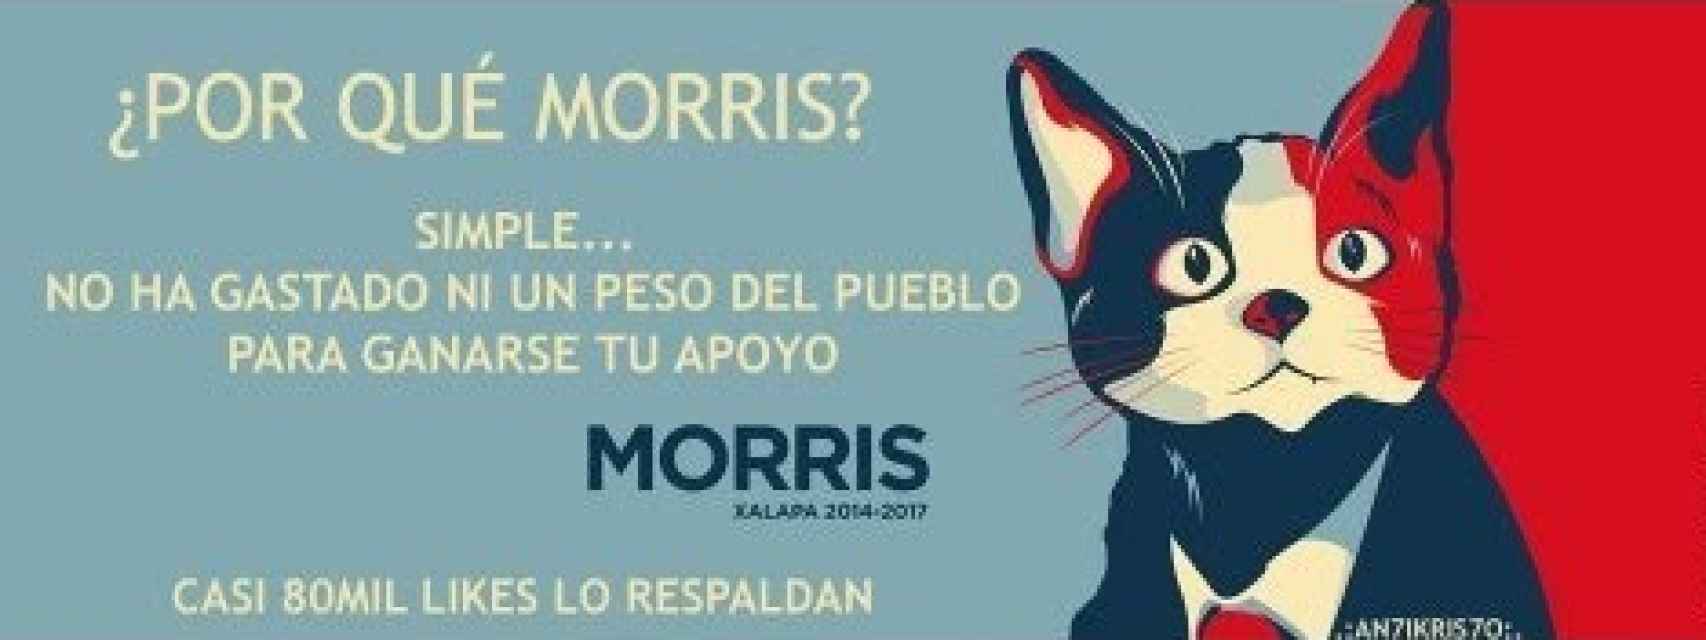 El candi-gato Morris en un cartel electoral.